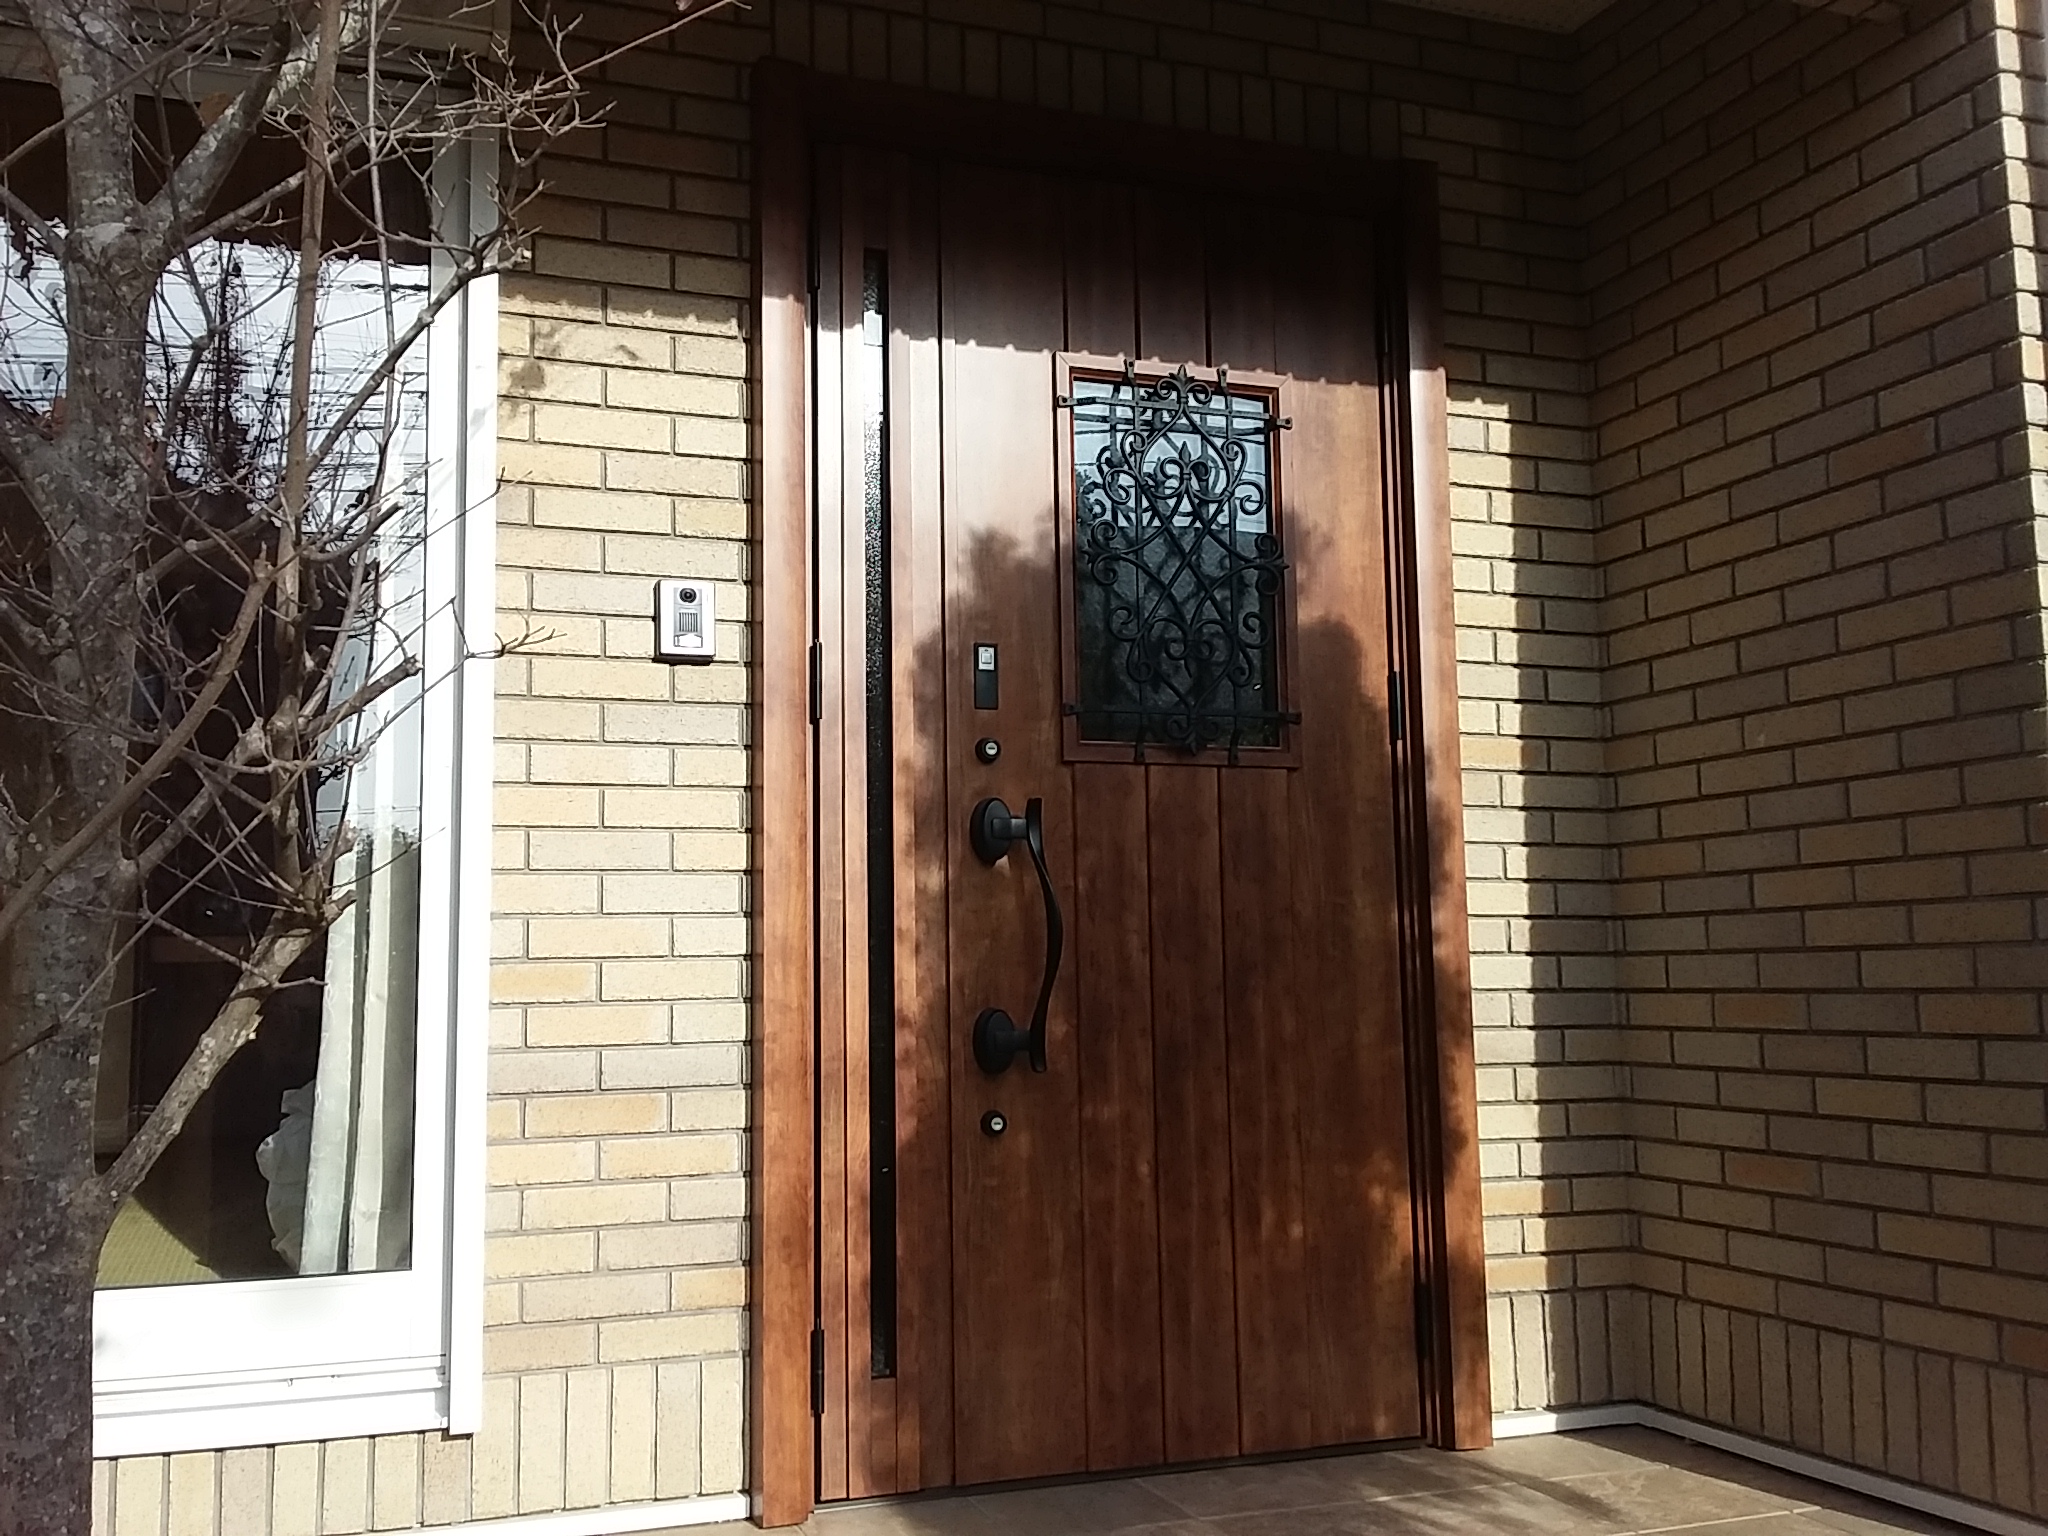 レンガ調の外壁に合う木目のドアにリフォーム Lixilリシェントd41型 埼玉県吉川市の工事事例 玄関ドアリフォームの玄関ドアマイスター